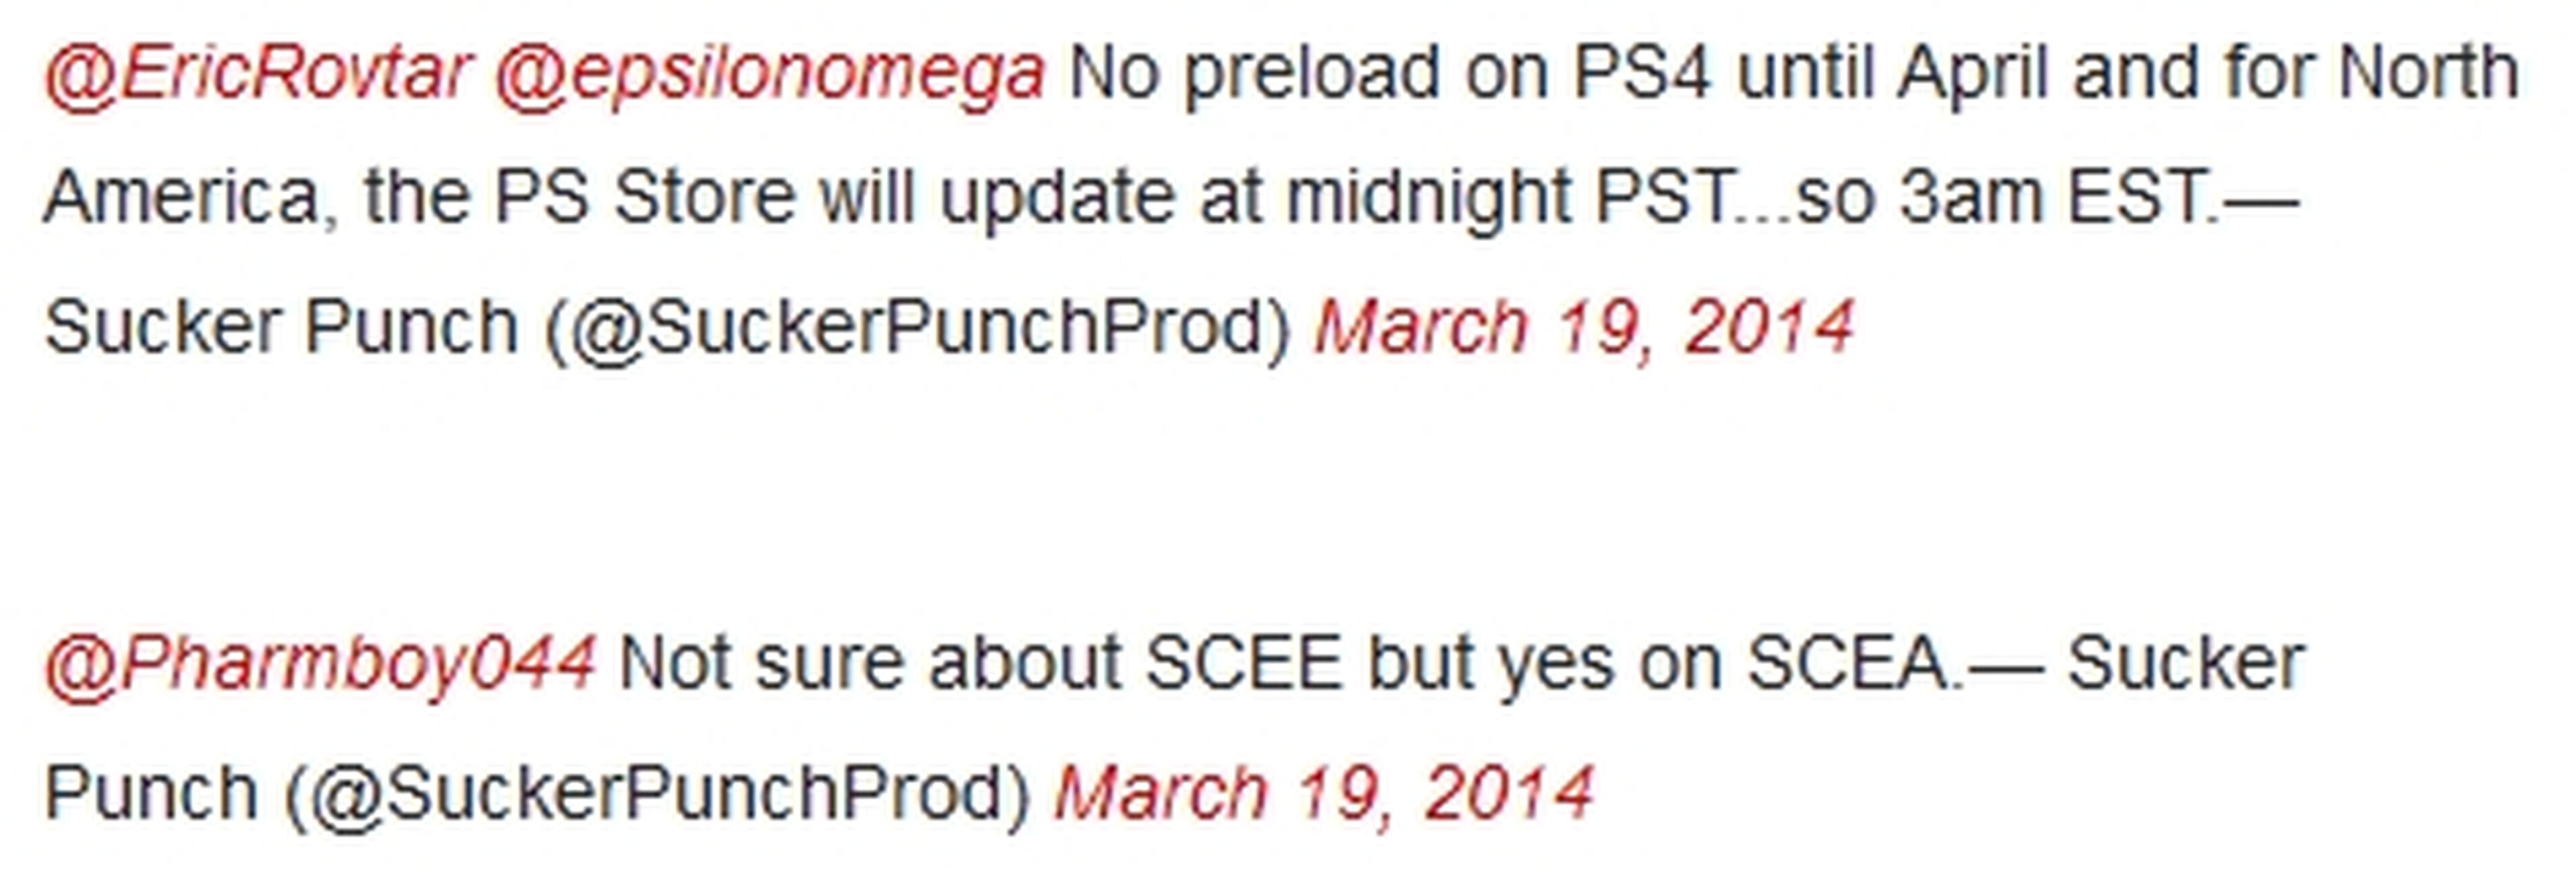 Las predescargas de PS4 llegarán en abril